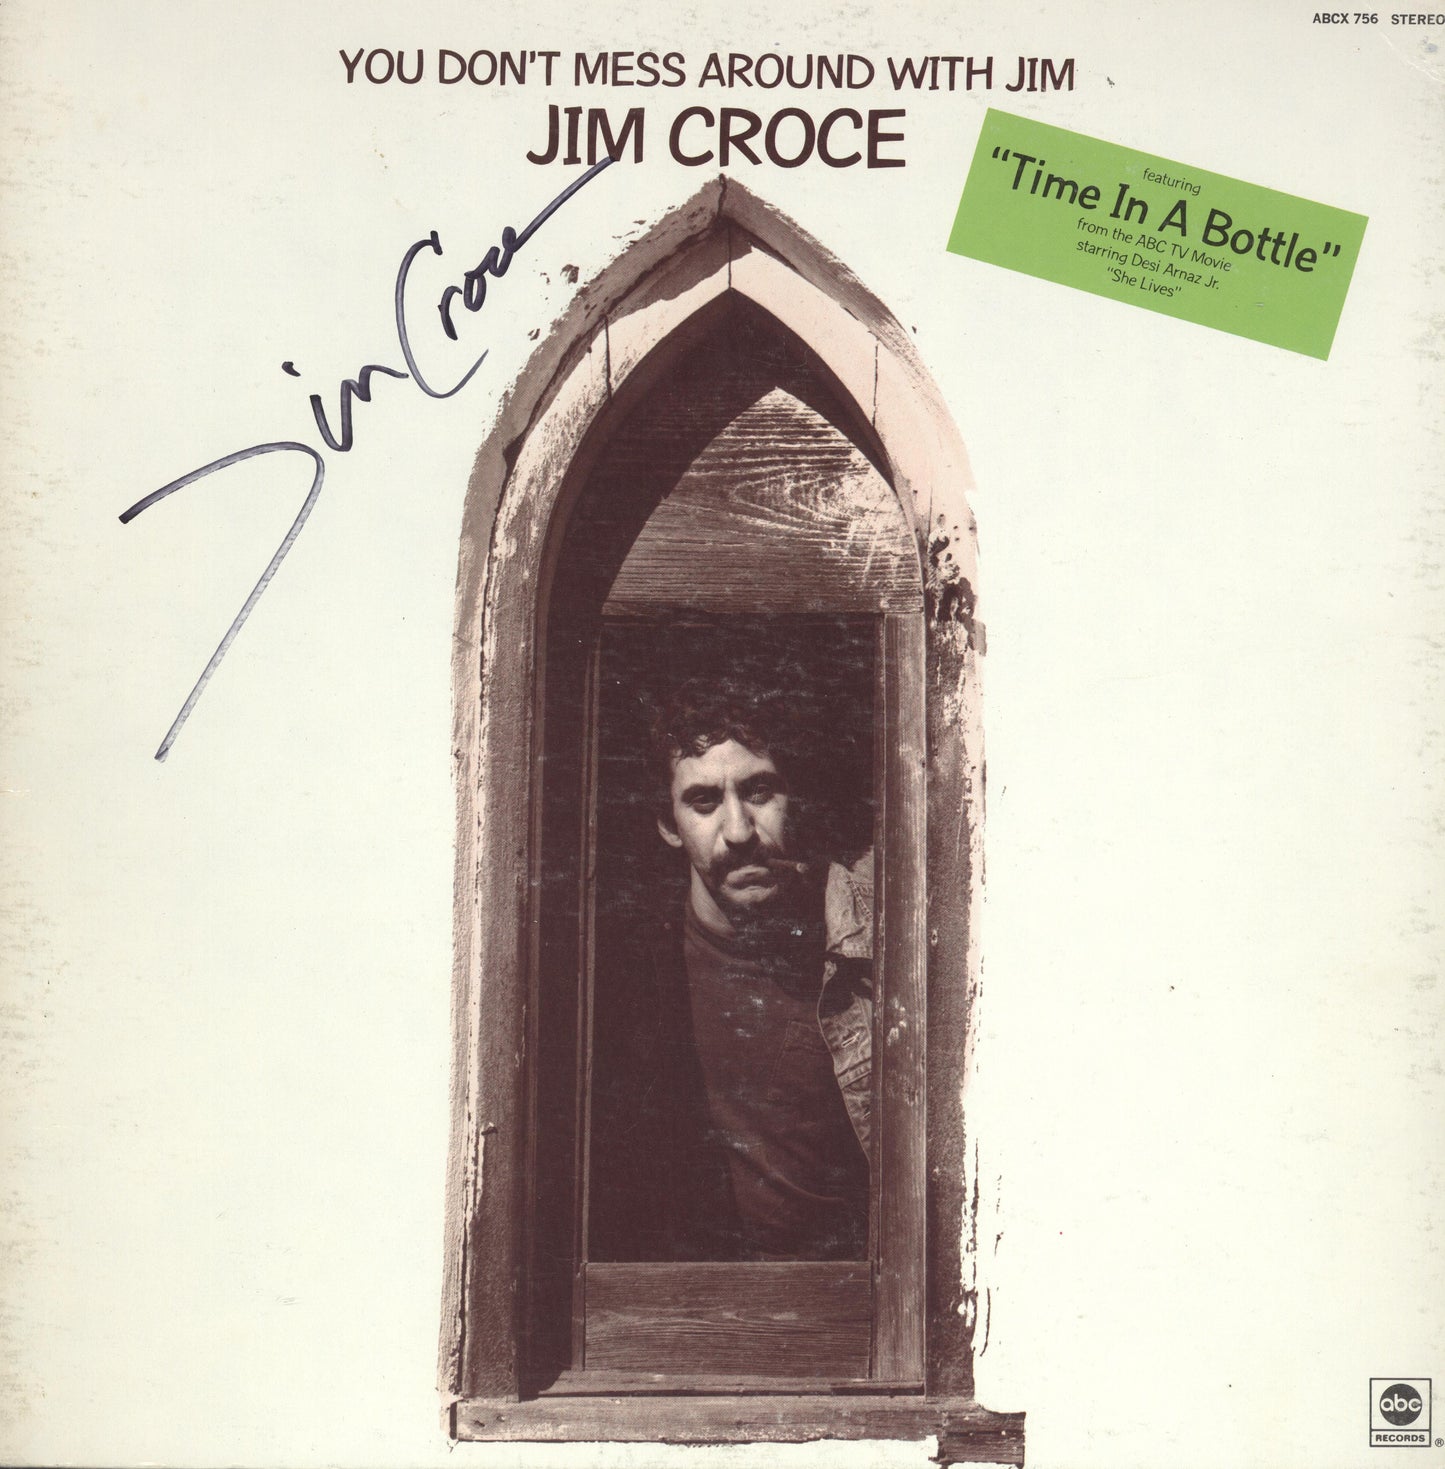 Jim Croce Autographed lp - Zion Graphic Collectibles